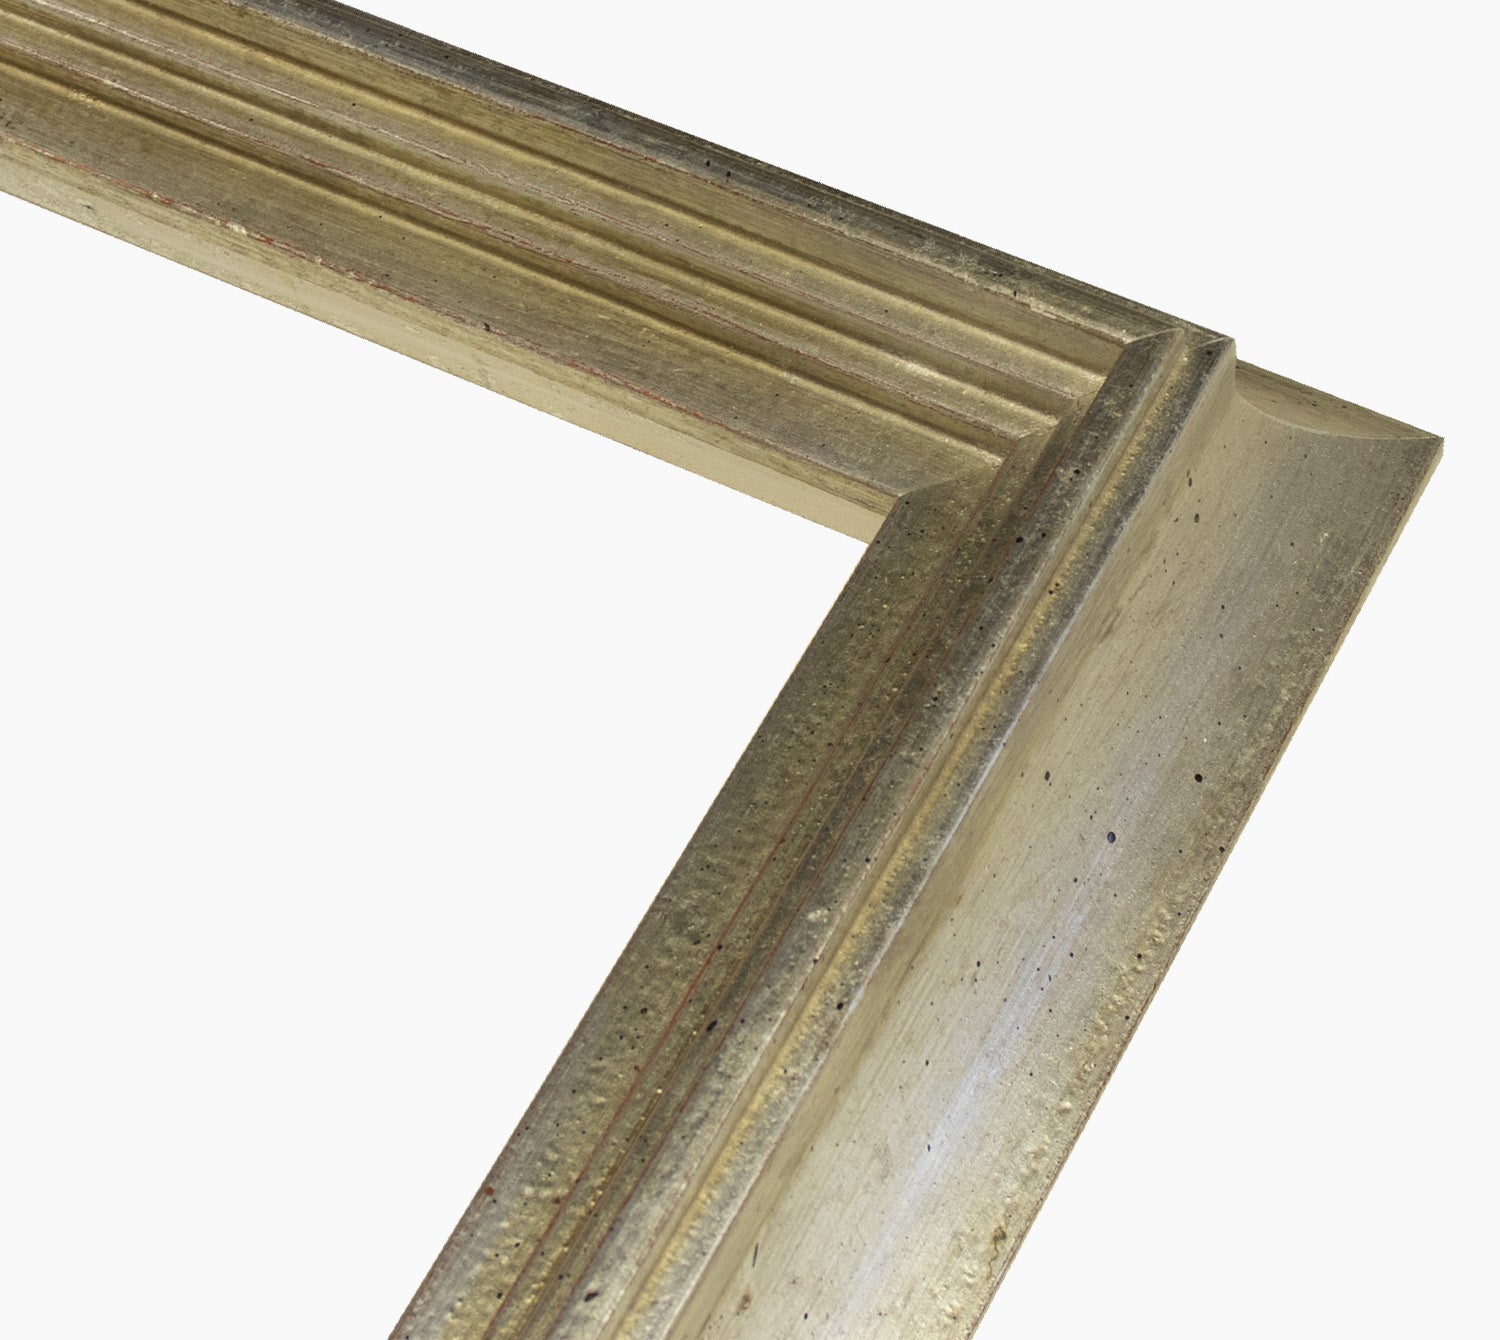 447.011 cadre en bois à la feuille d'argent mesure de profil 65x55 mm Lombarda cornici S.n.c.